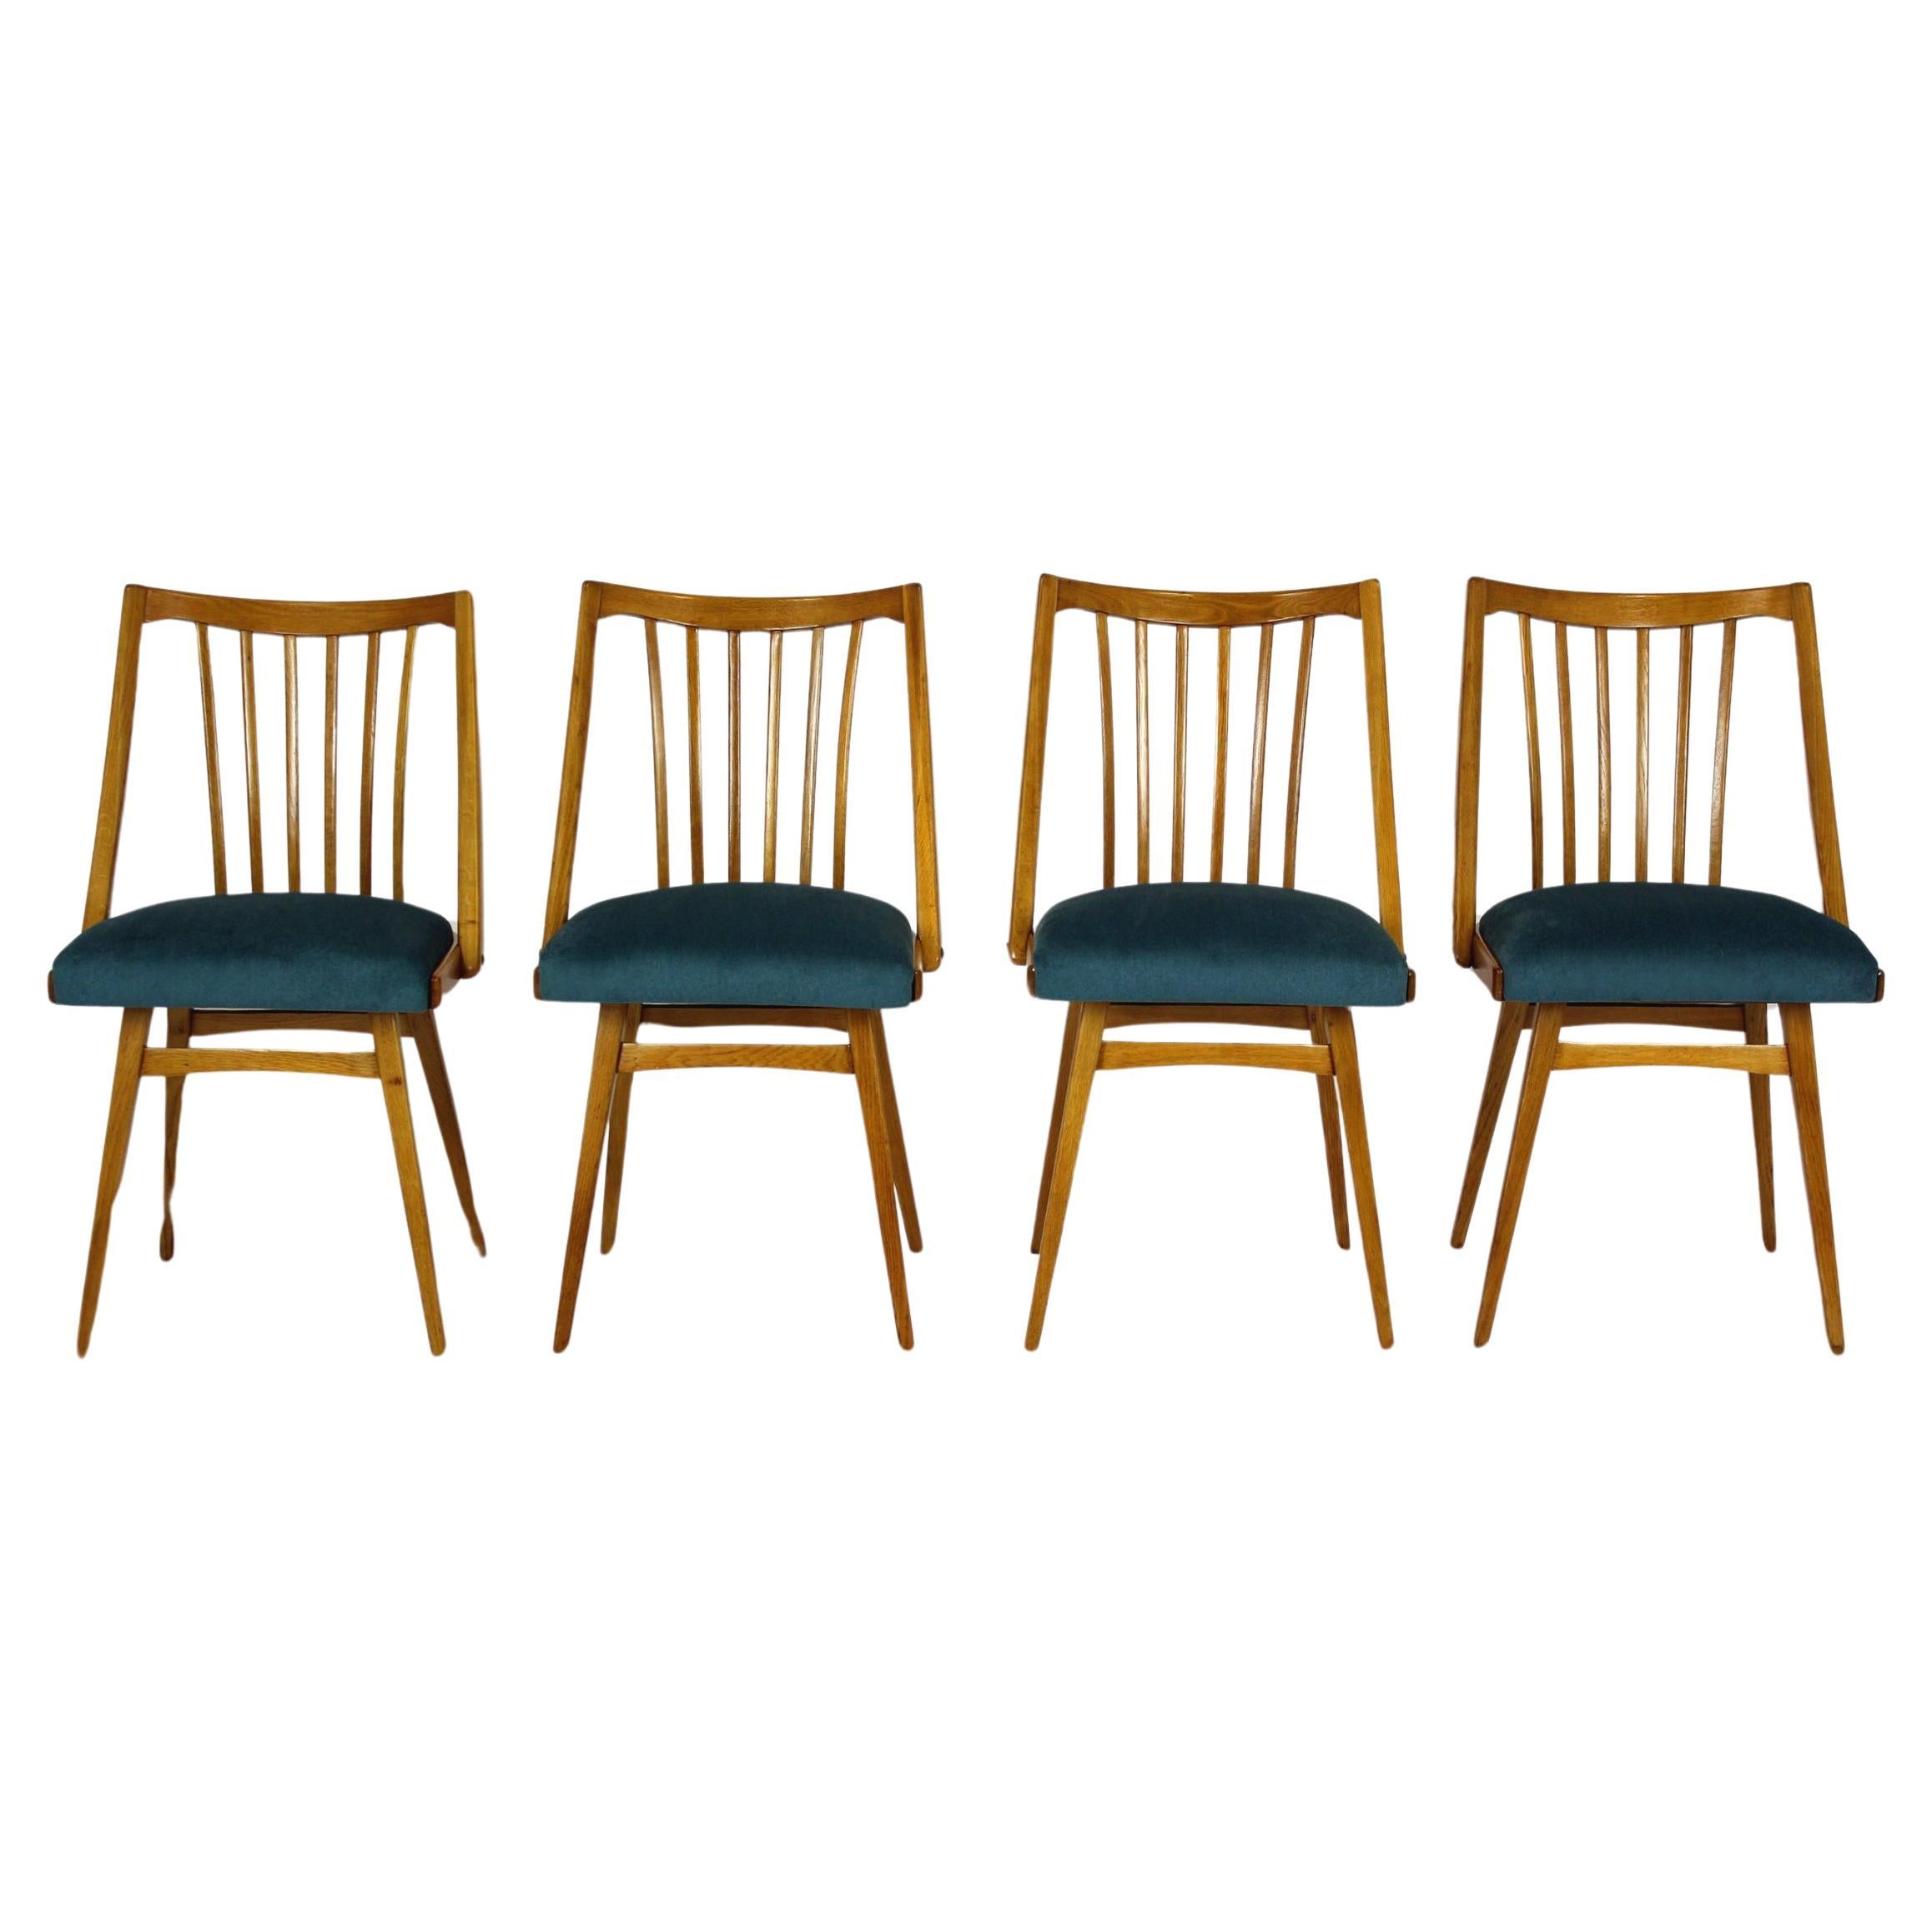 telas para tapizar sillas - Buscar con Google  Sillas tapizadas, Sillas,  Sillas restauradas